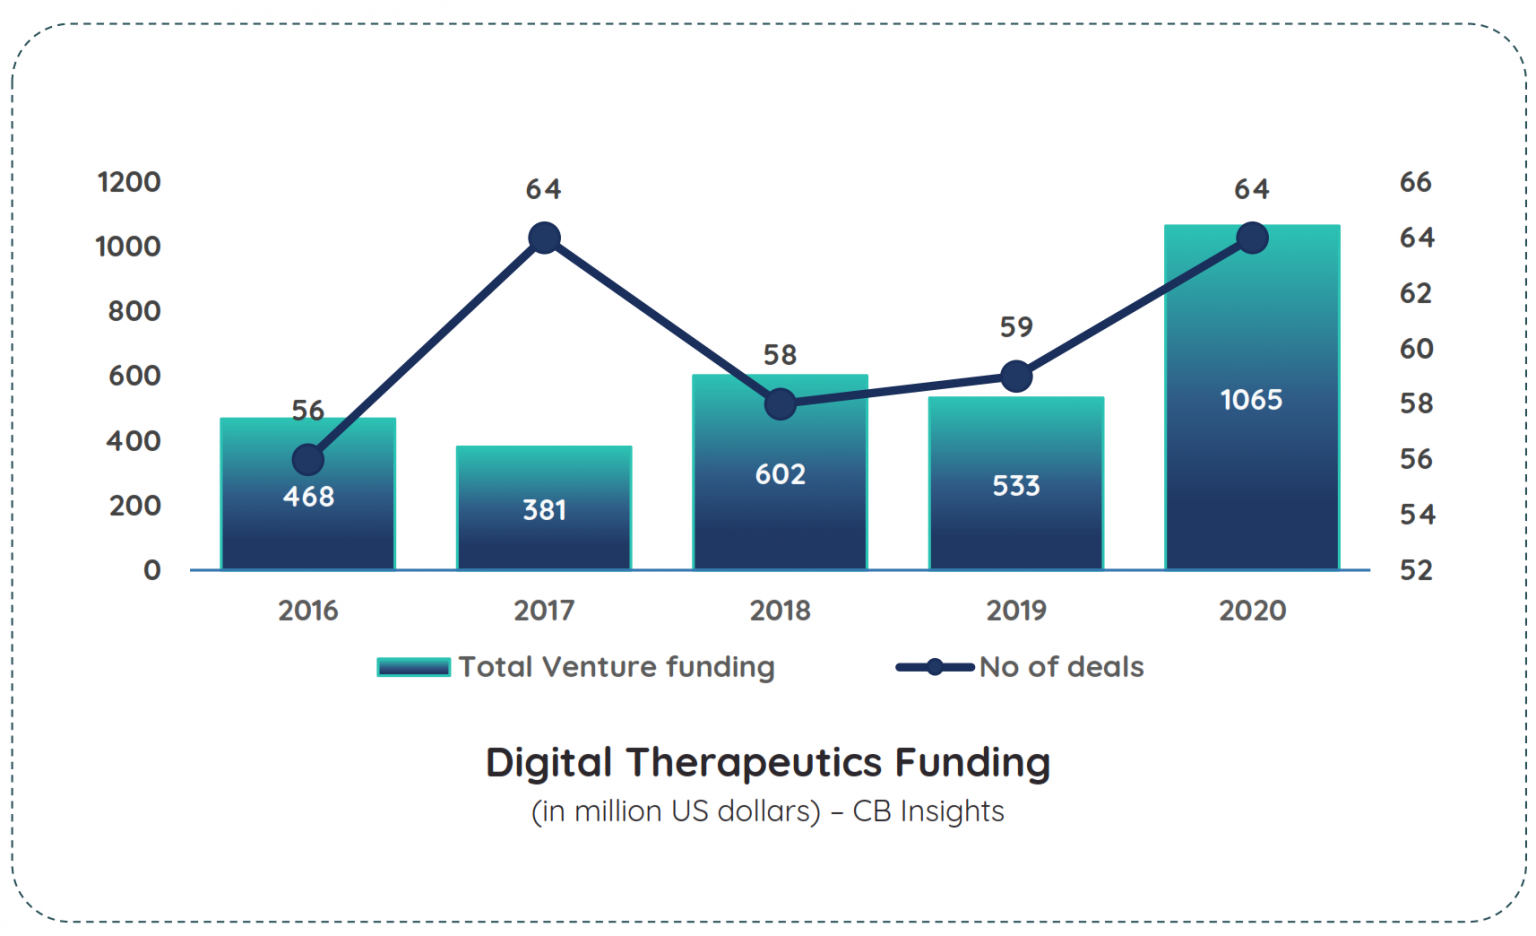 Digital therapeutics raised record funding in 2020